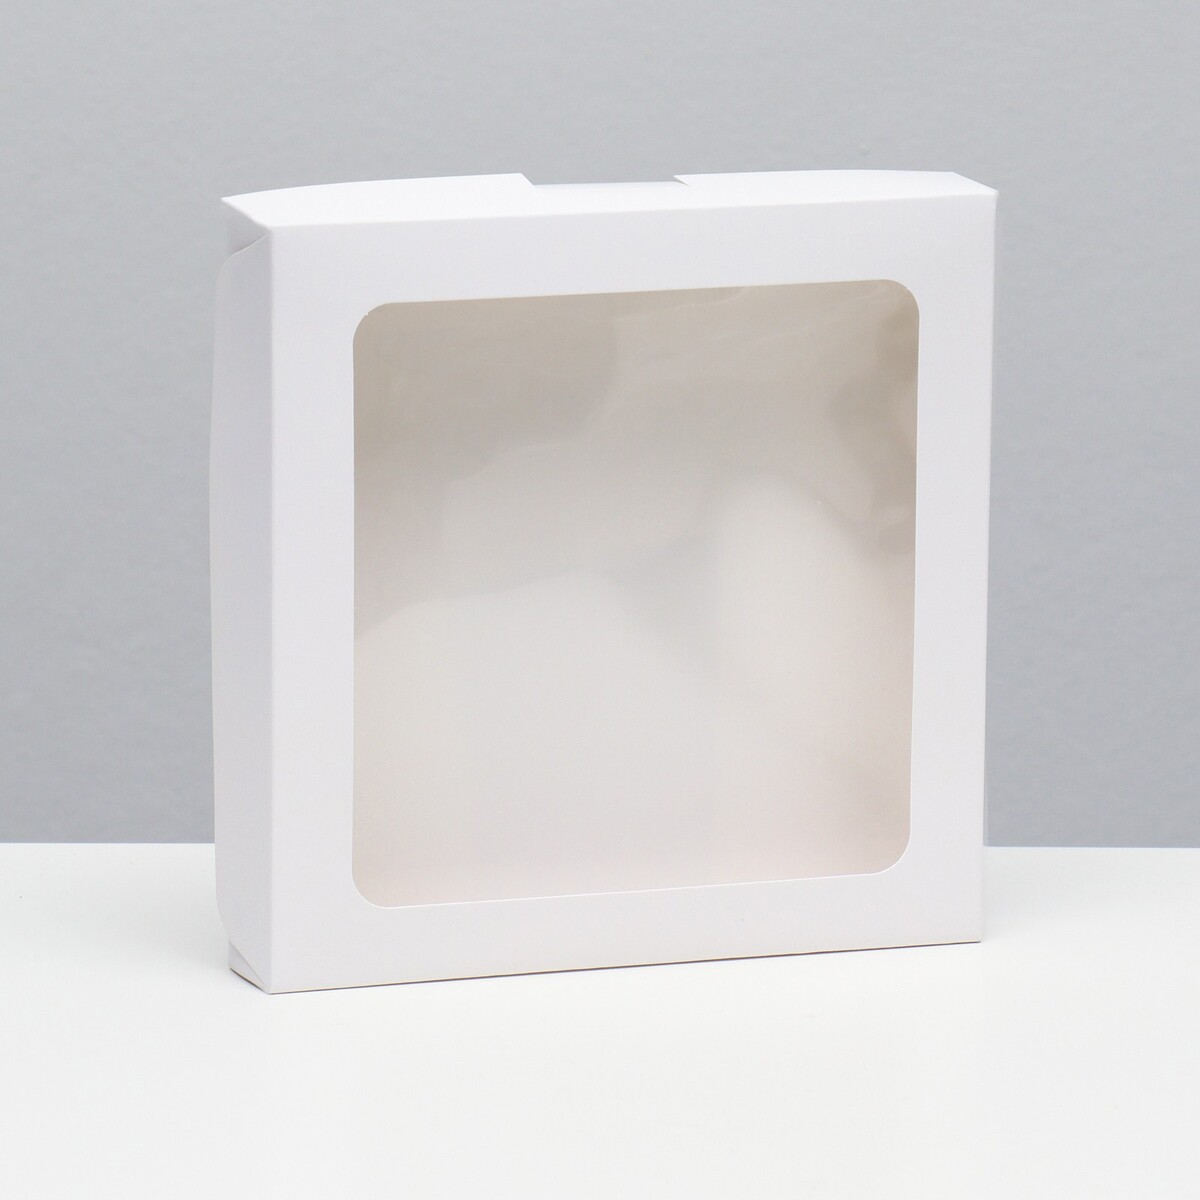 Коробка самосборная, белая, 19 х 19 х 3 см коробка под пироженое белая 17 х 17 х 10 см